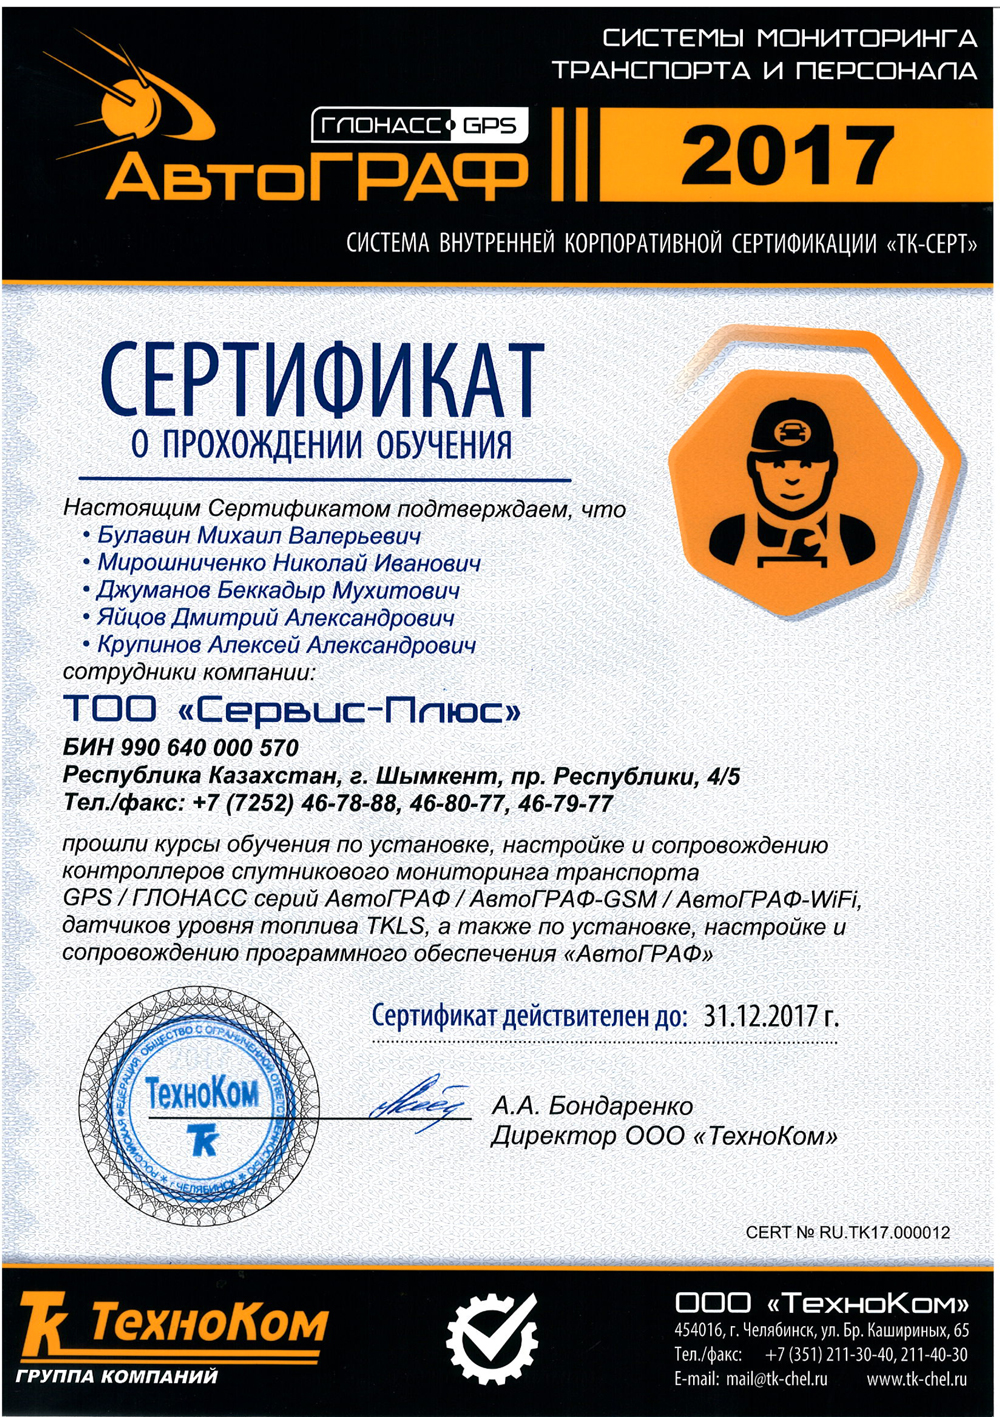 Сертификат информационной поддержки системы «АвтоГРАФ» 2015 год